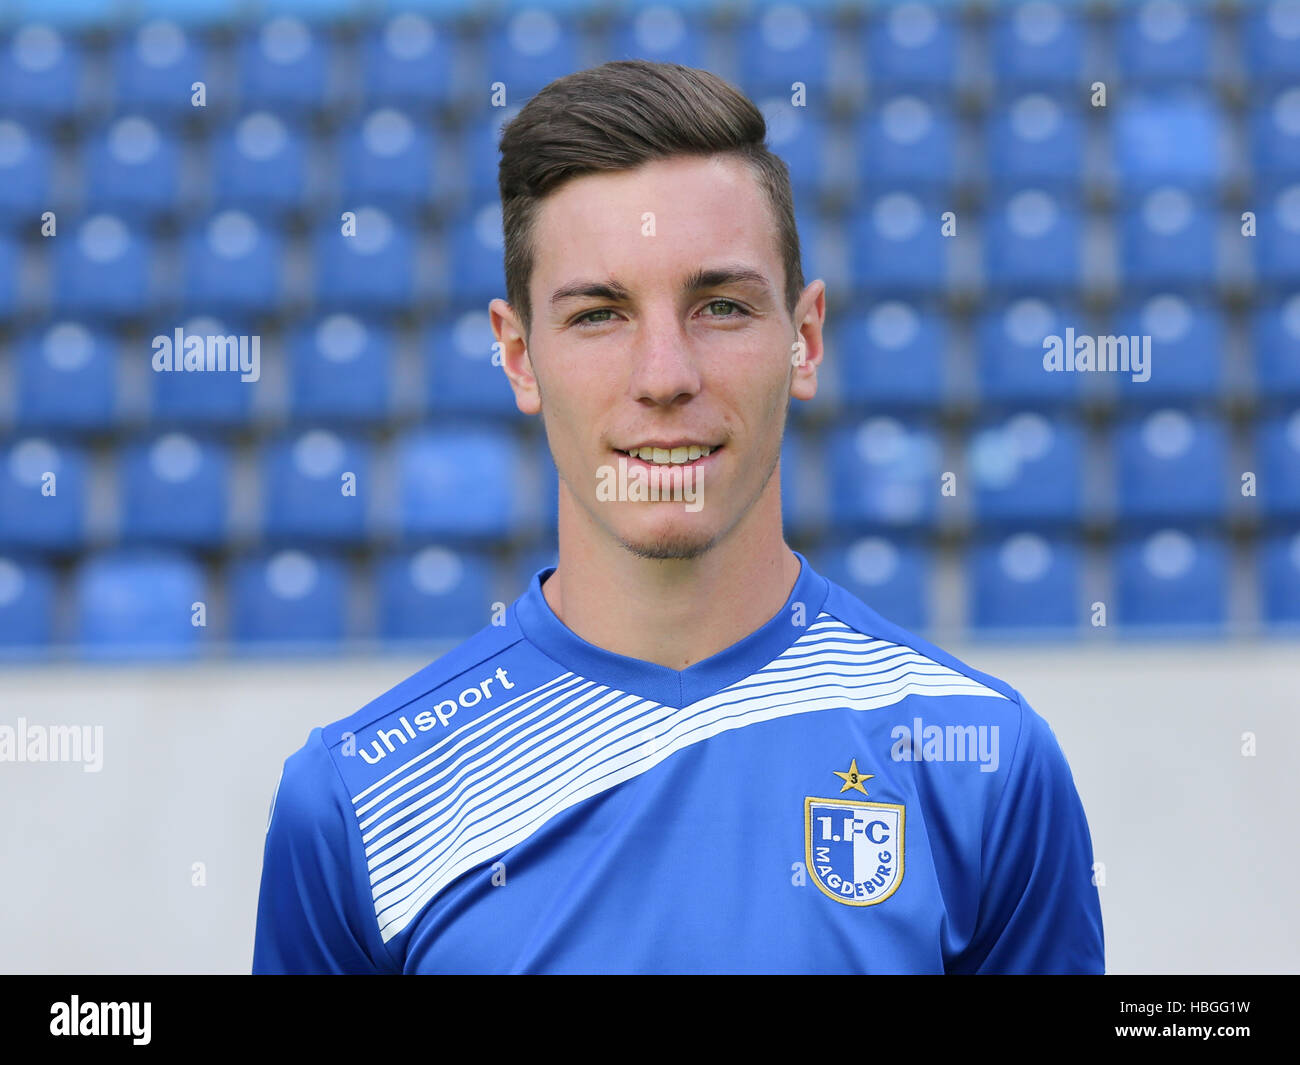 Florian Kath (1.FC Magdeburg) Stock Photo